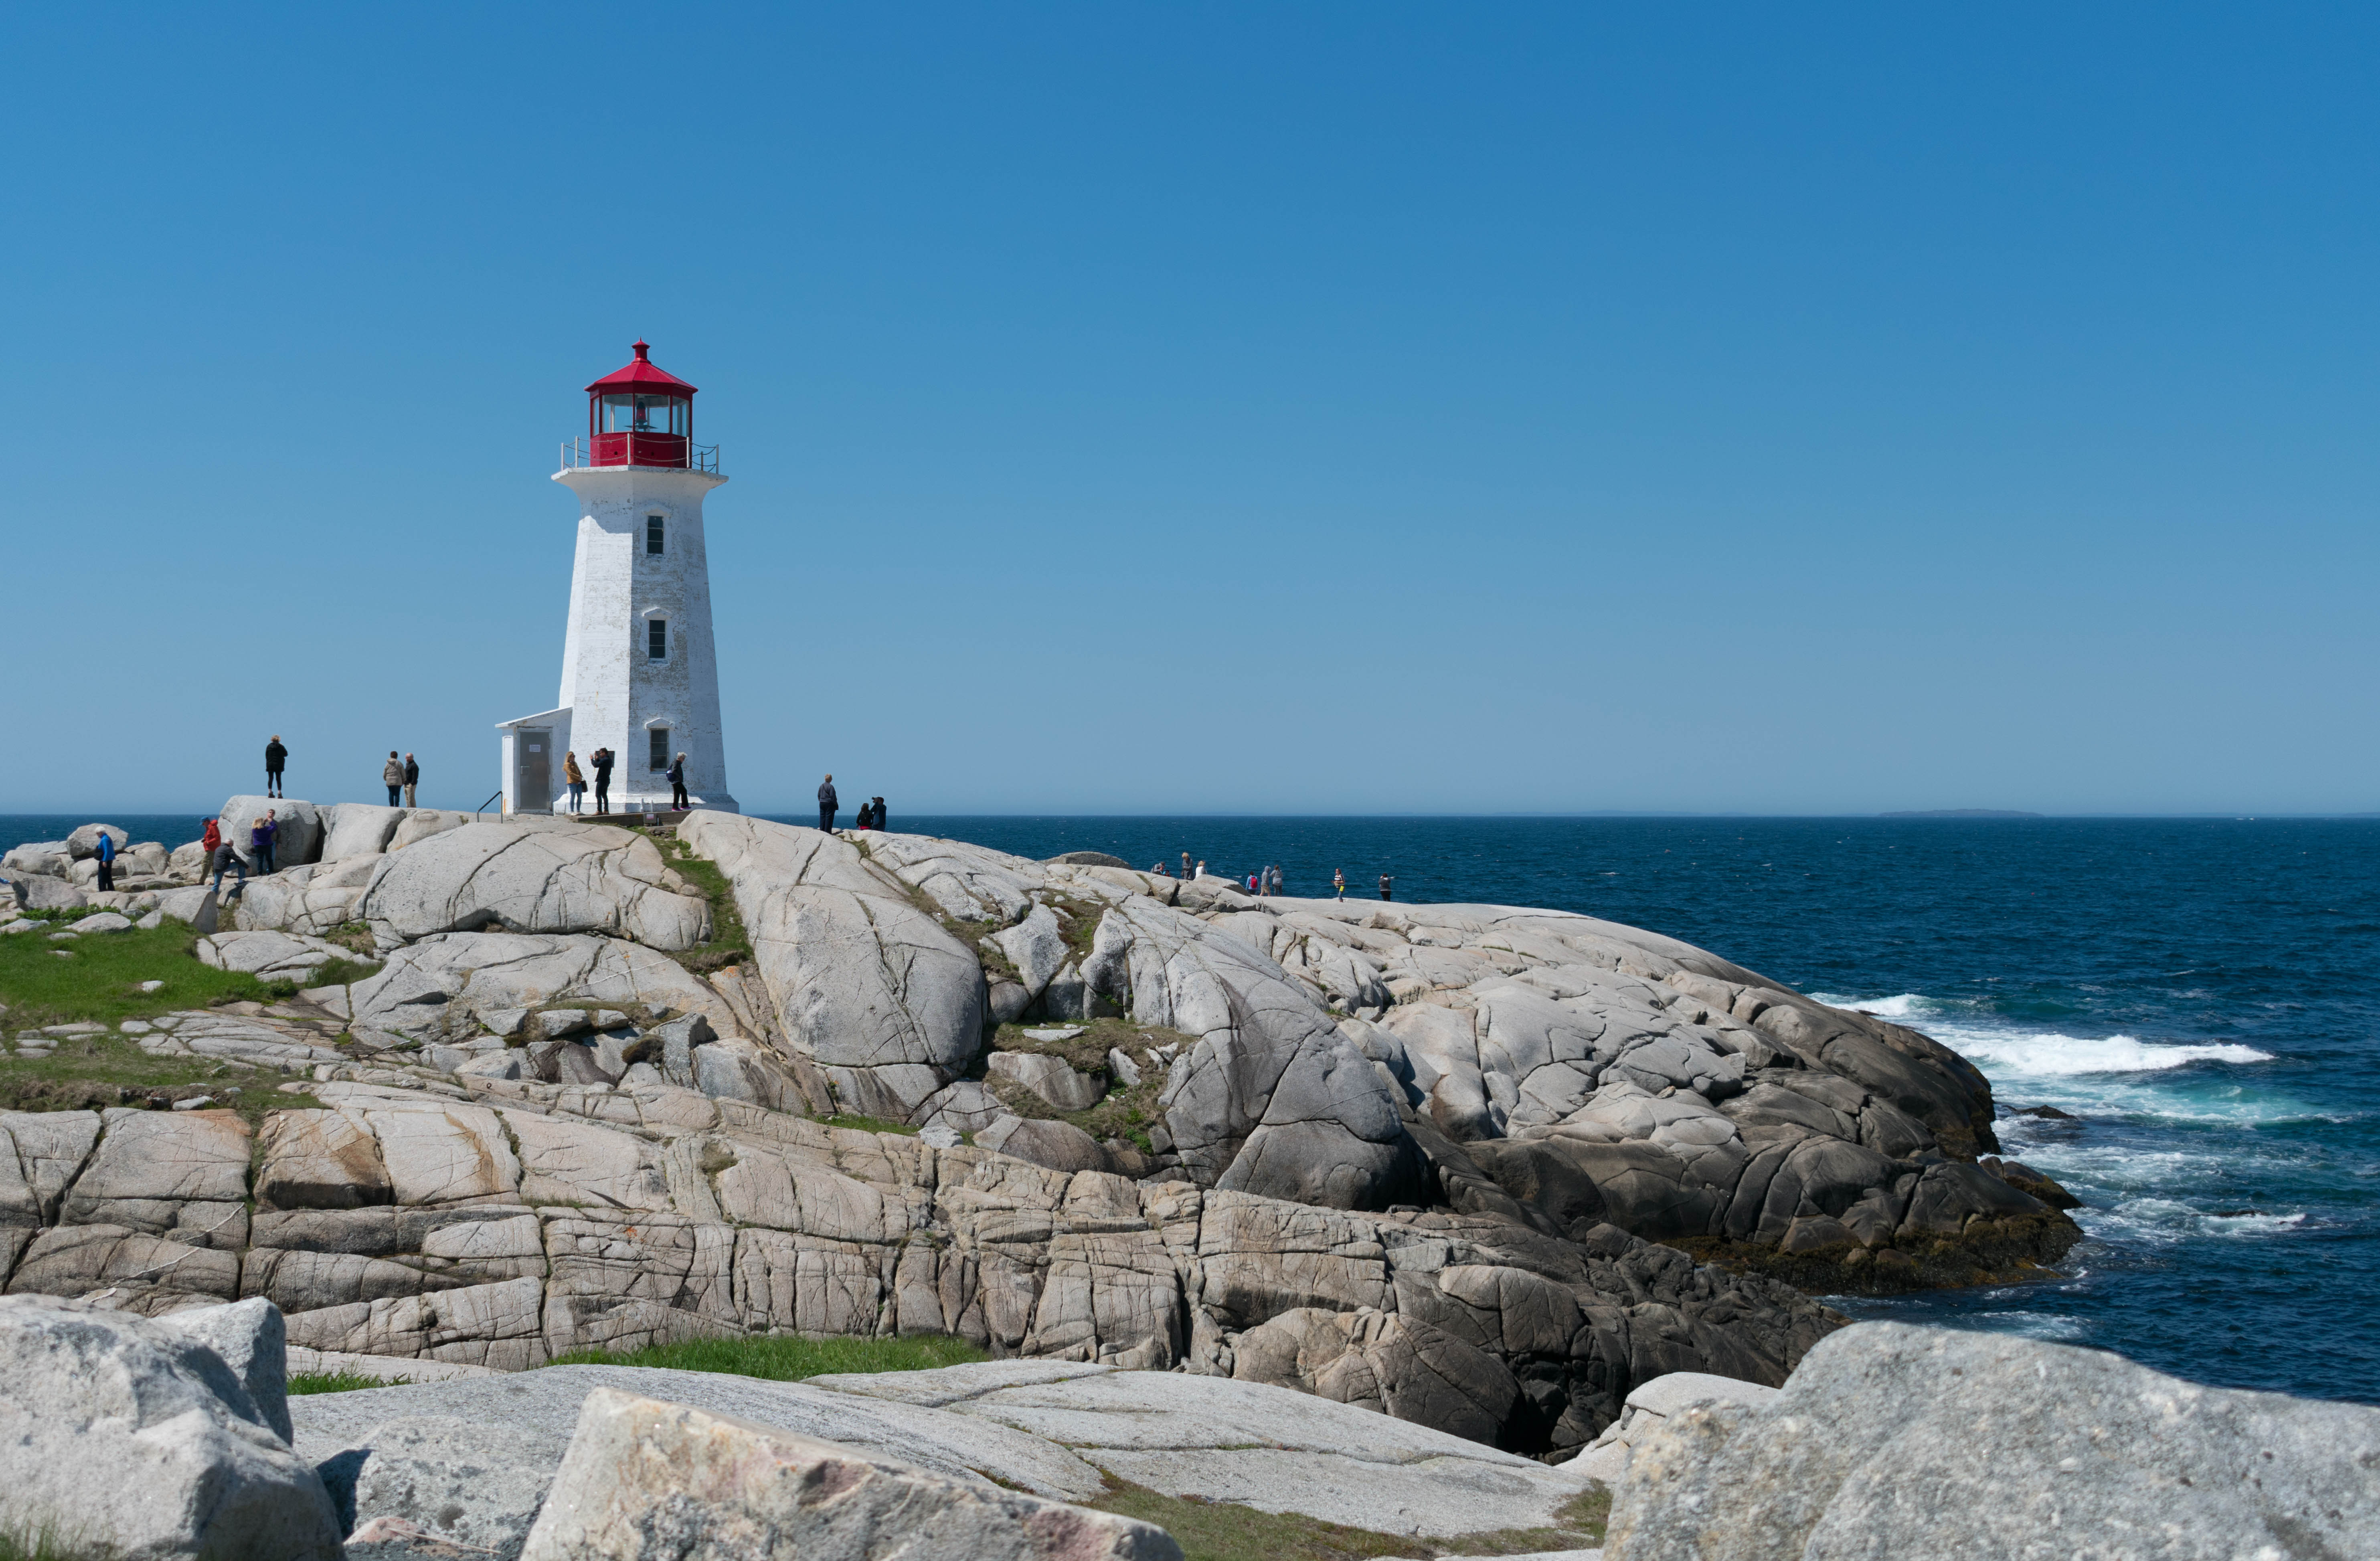 Peggy's Point lighthouse, Beach, Coast, Lighthouse, Ocean, HQ Photo